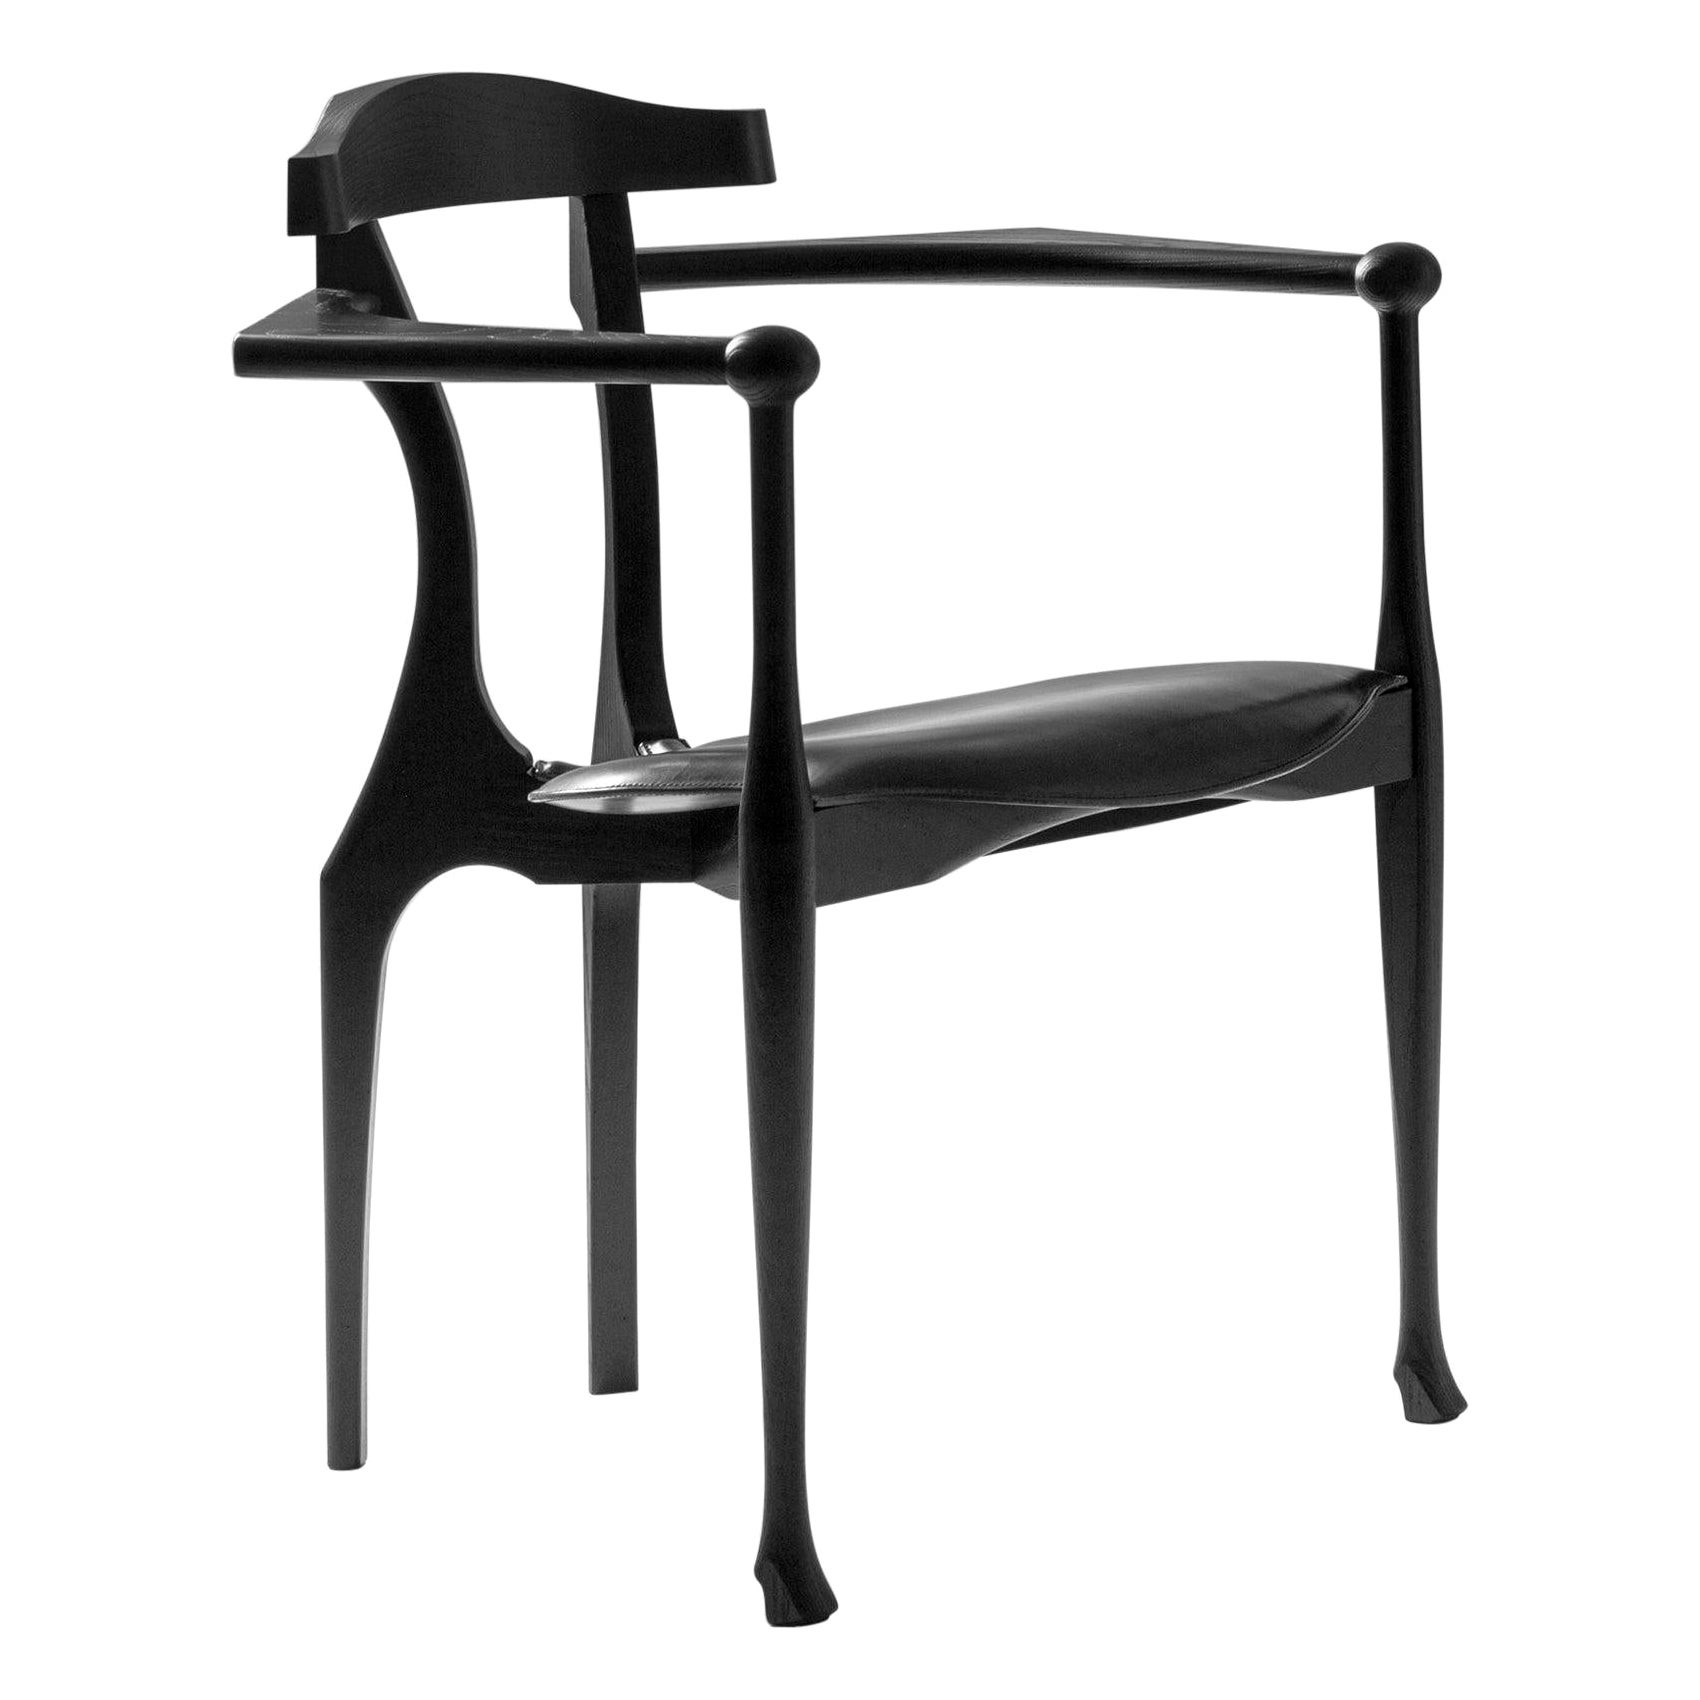 Fauteuils Oscar Tusquets en frêne noir, style moderne du milieu du siècle, fauteuils espagnols Gaulino